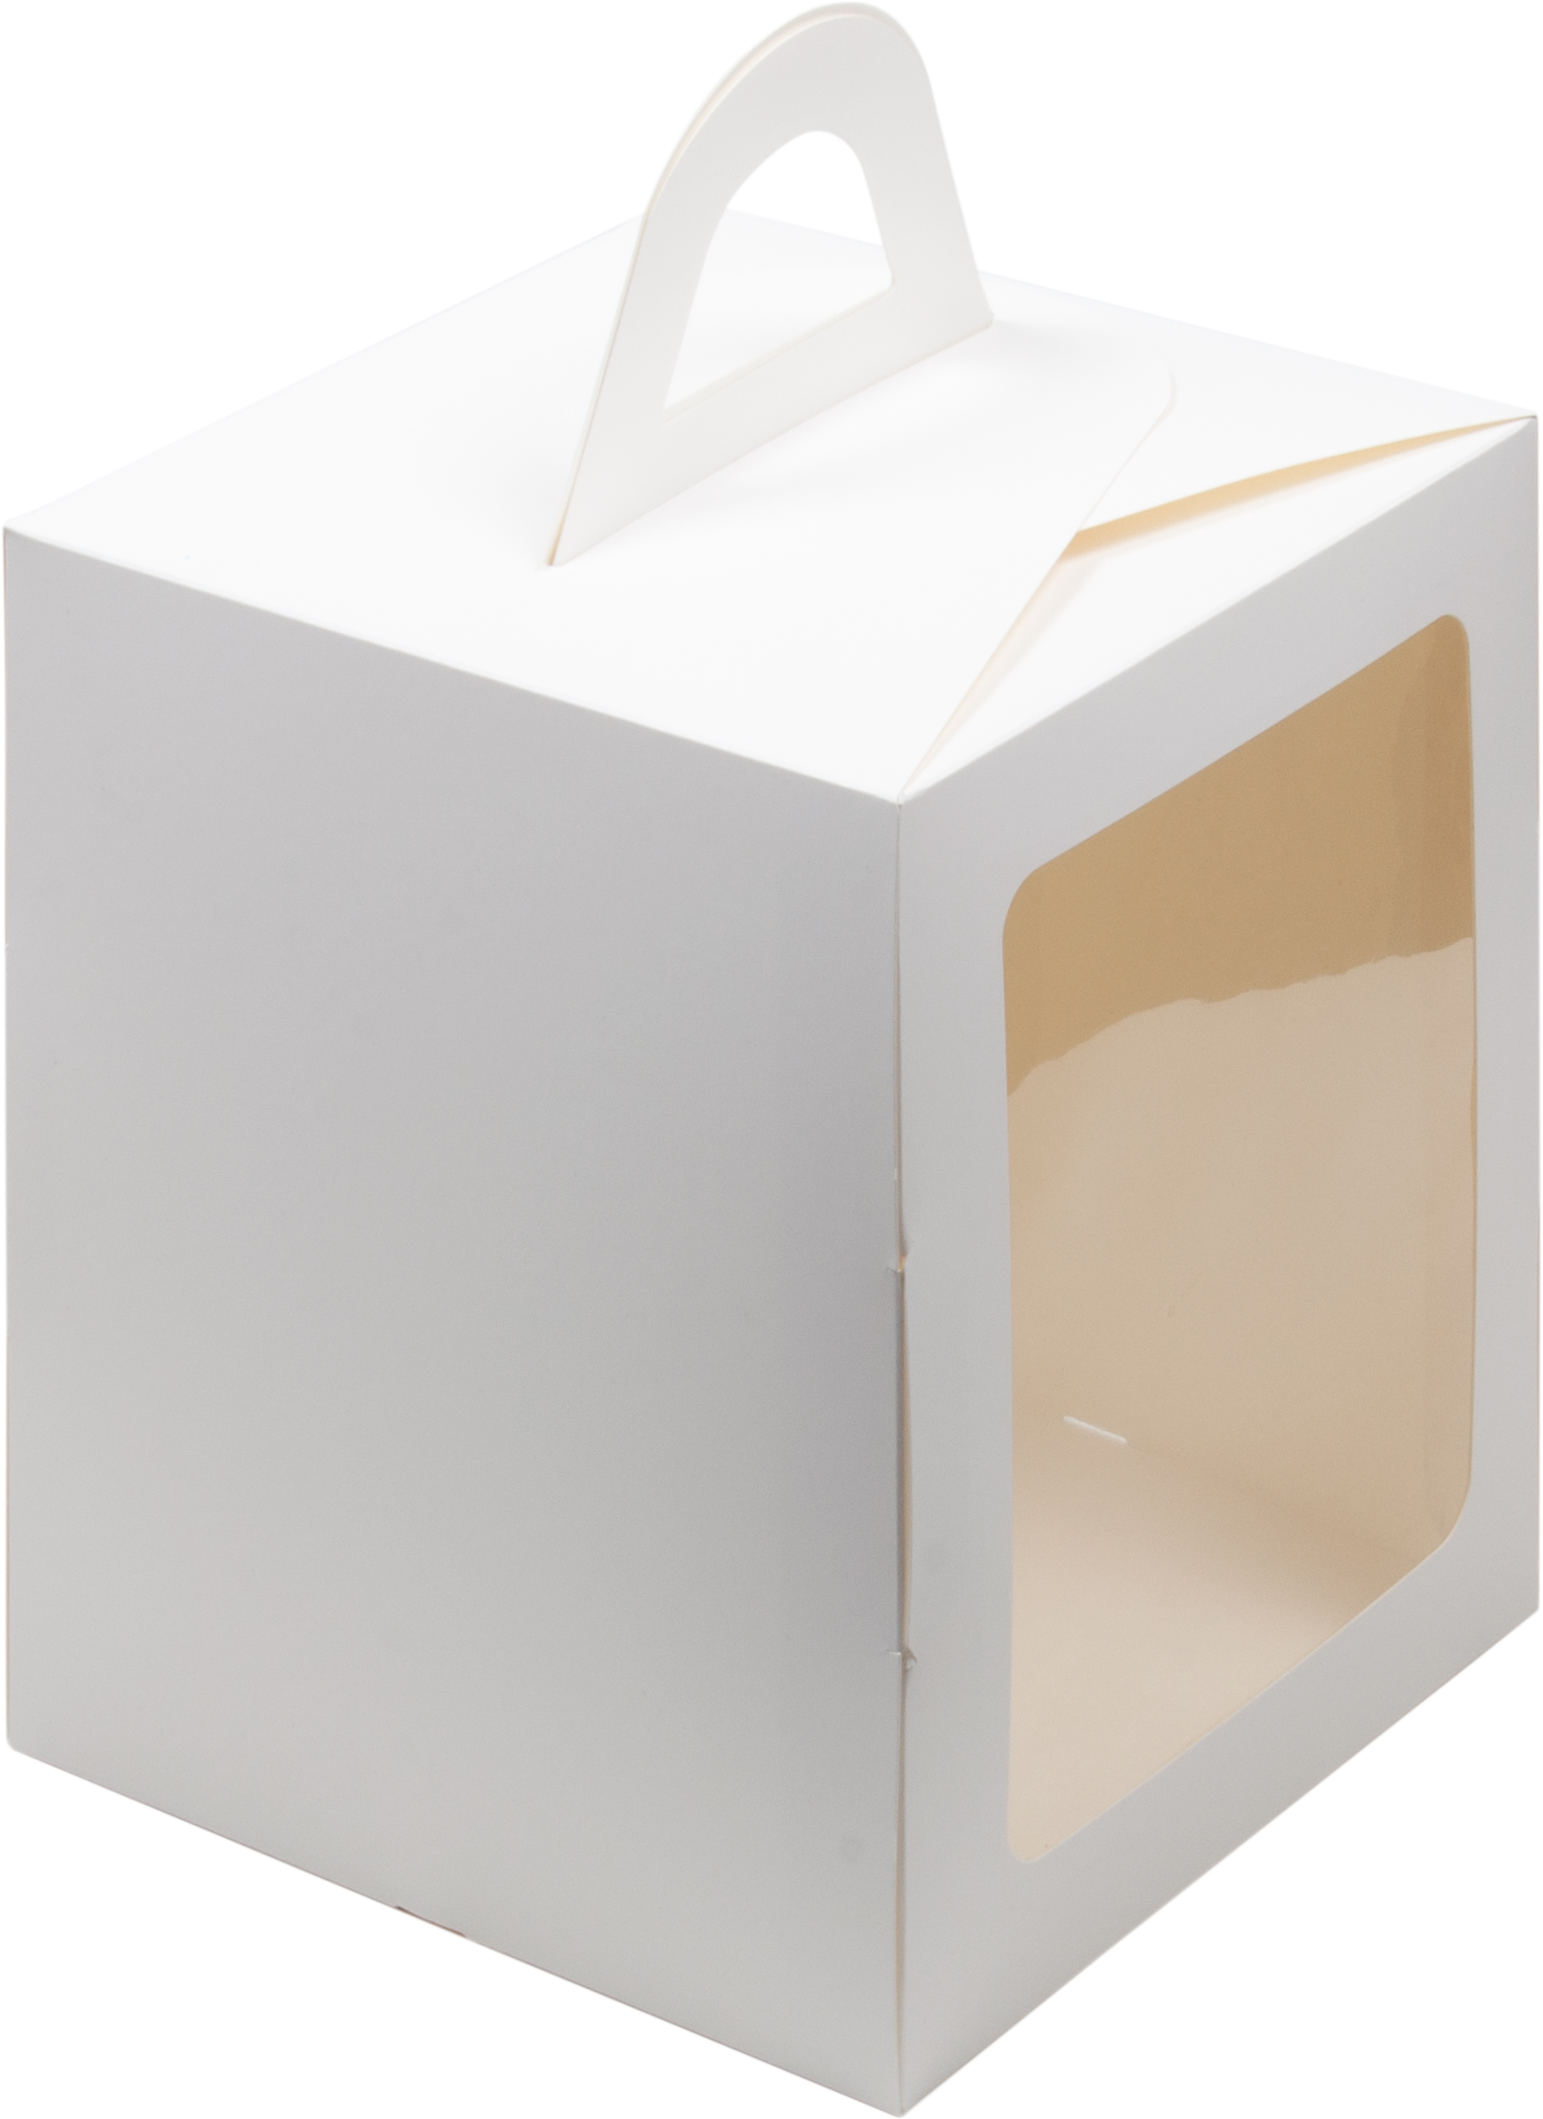 Коробка под пряничный домик и кулич,125*125*150 мм картон (белая) + ложемент